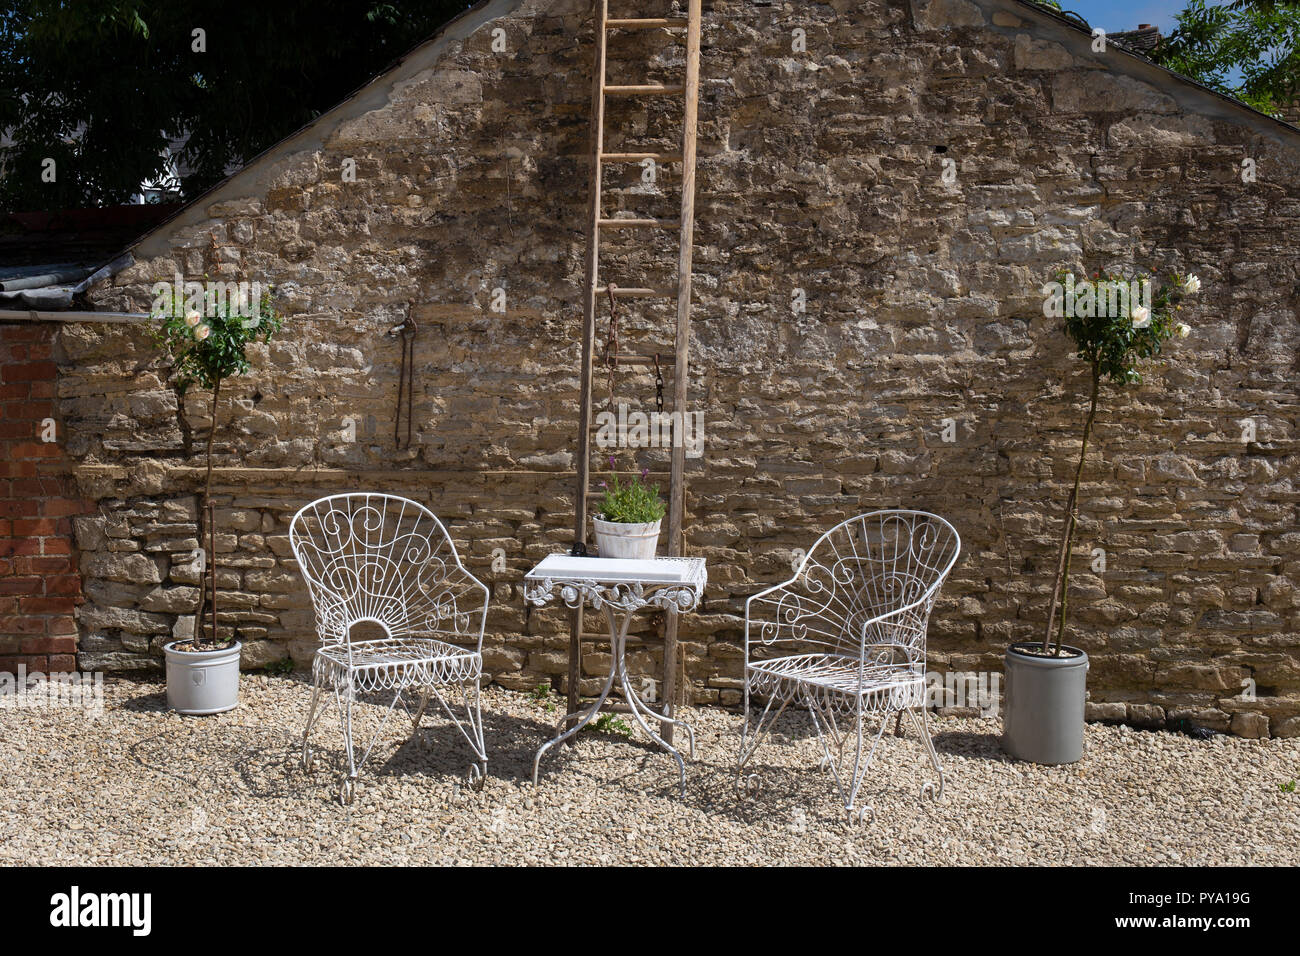 Sillas de jardín metálicos sobre gravilla Courtyard estándar con rosas en macetas y antigua escalera en Jardín Inglés,Inglaterra,Europa Foto de stock